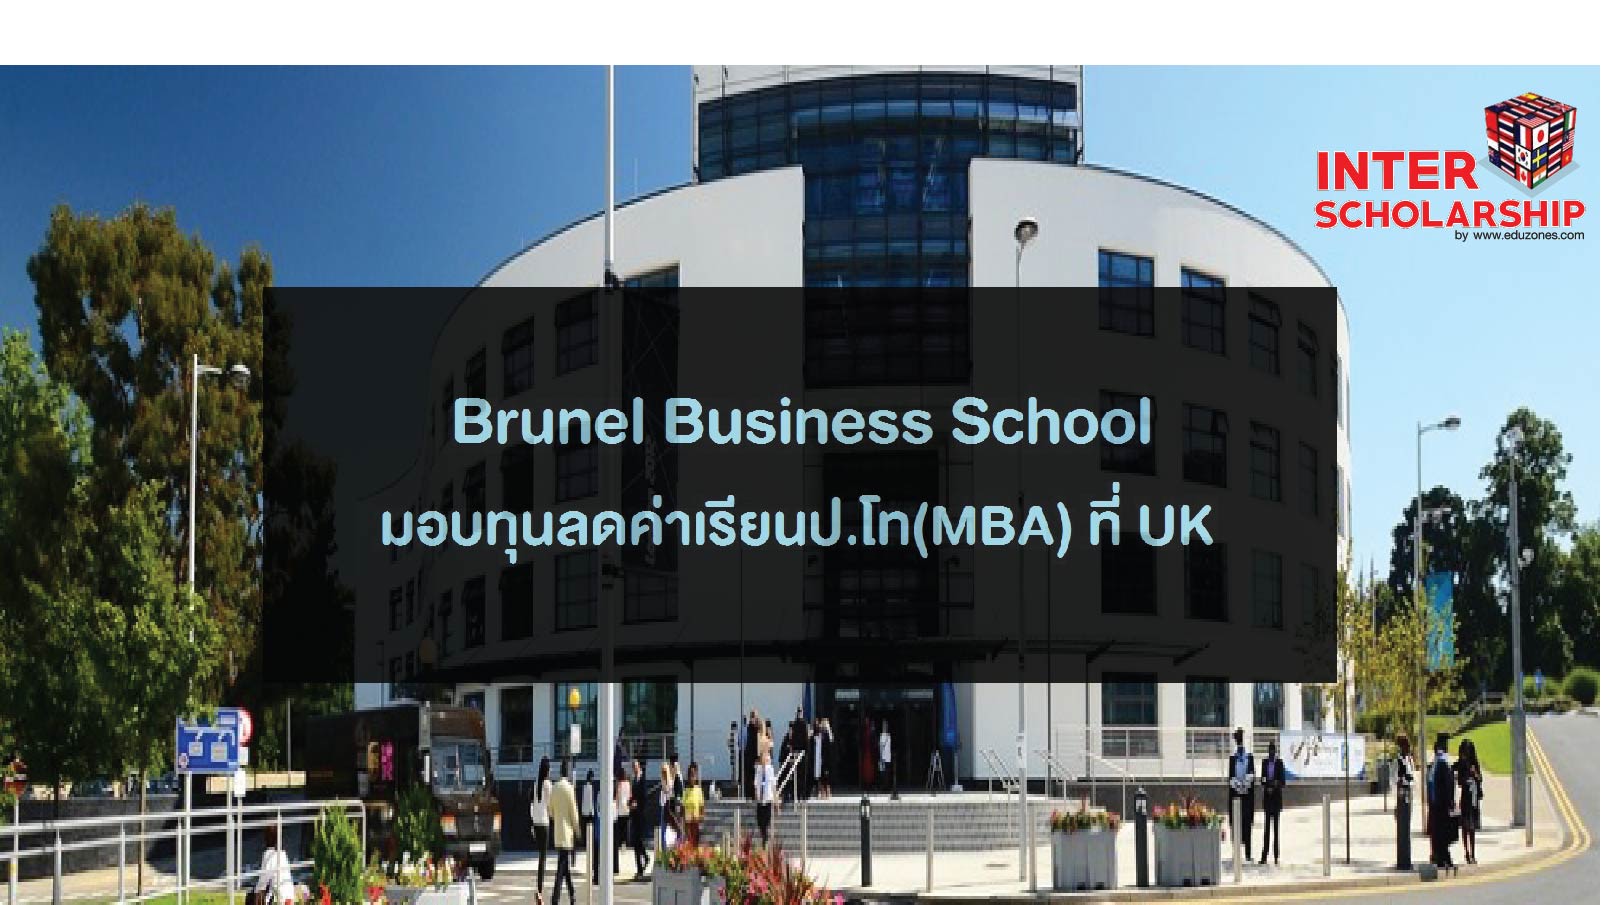  Brunel Business School 